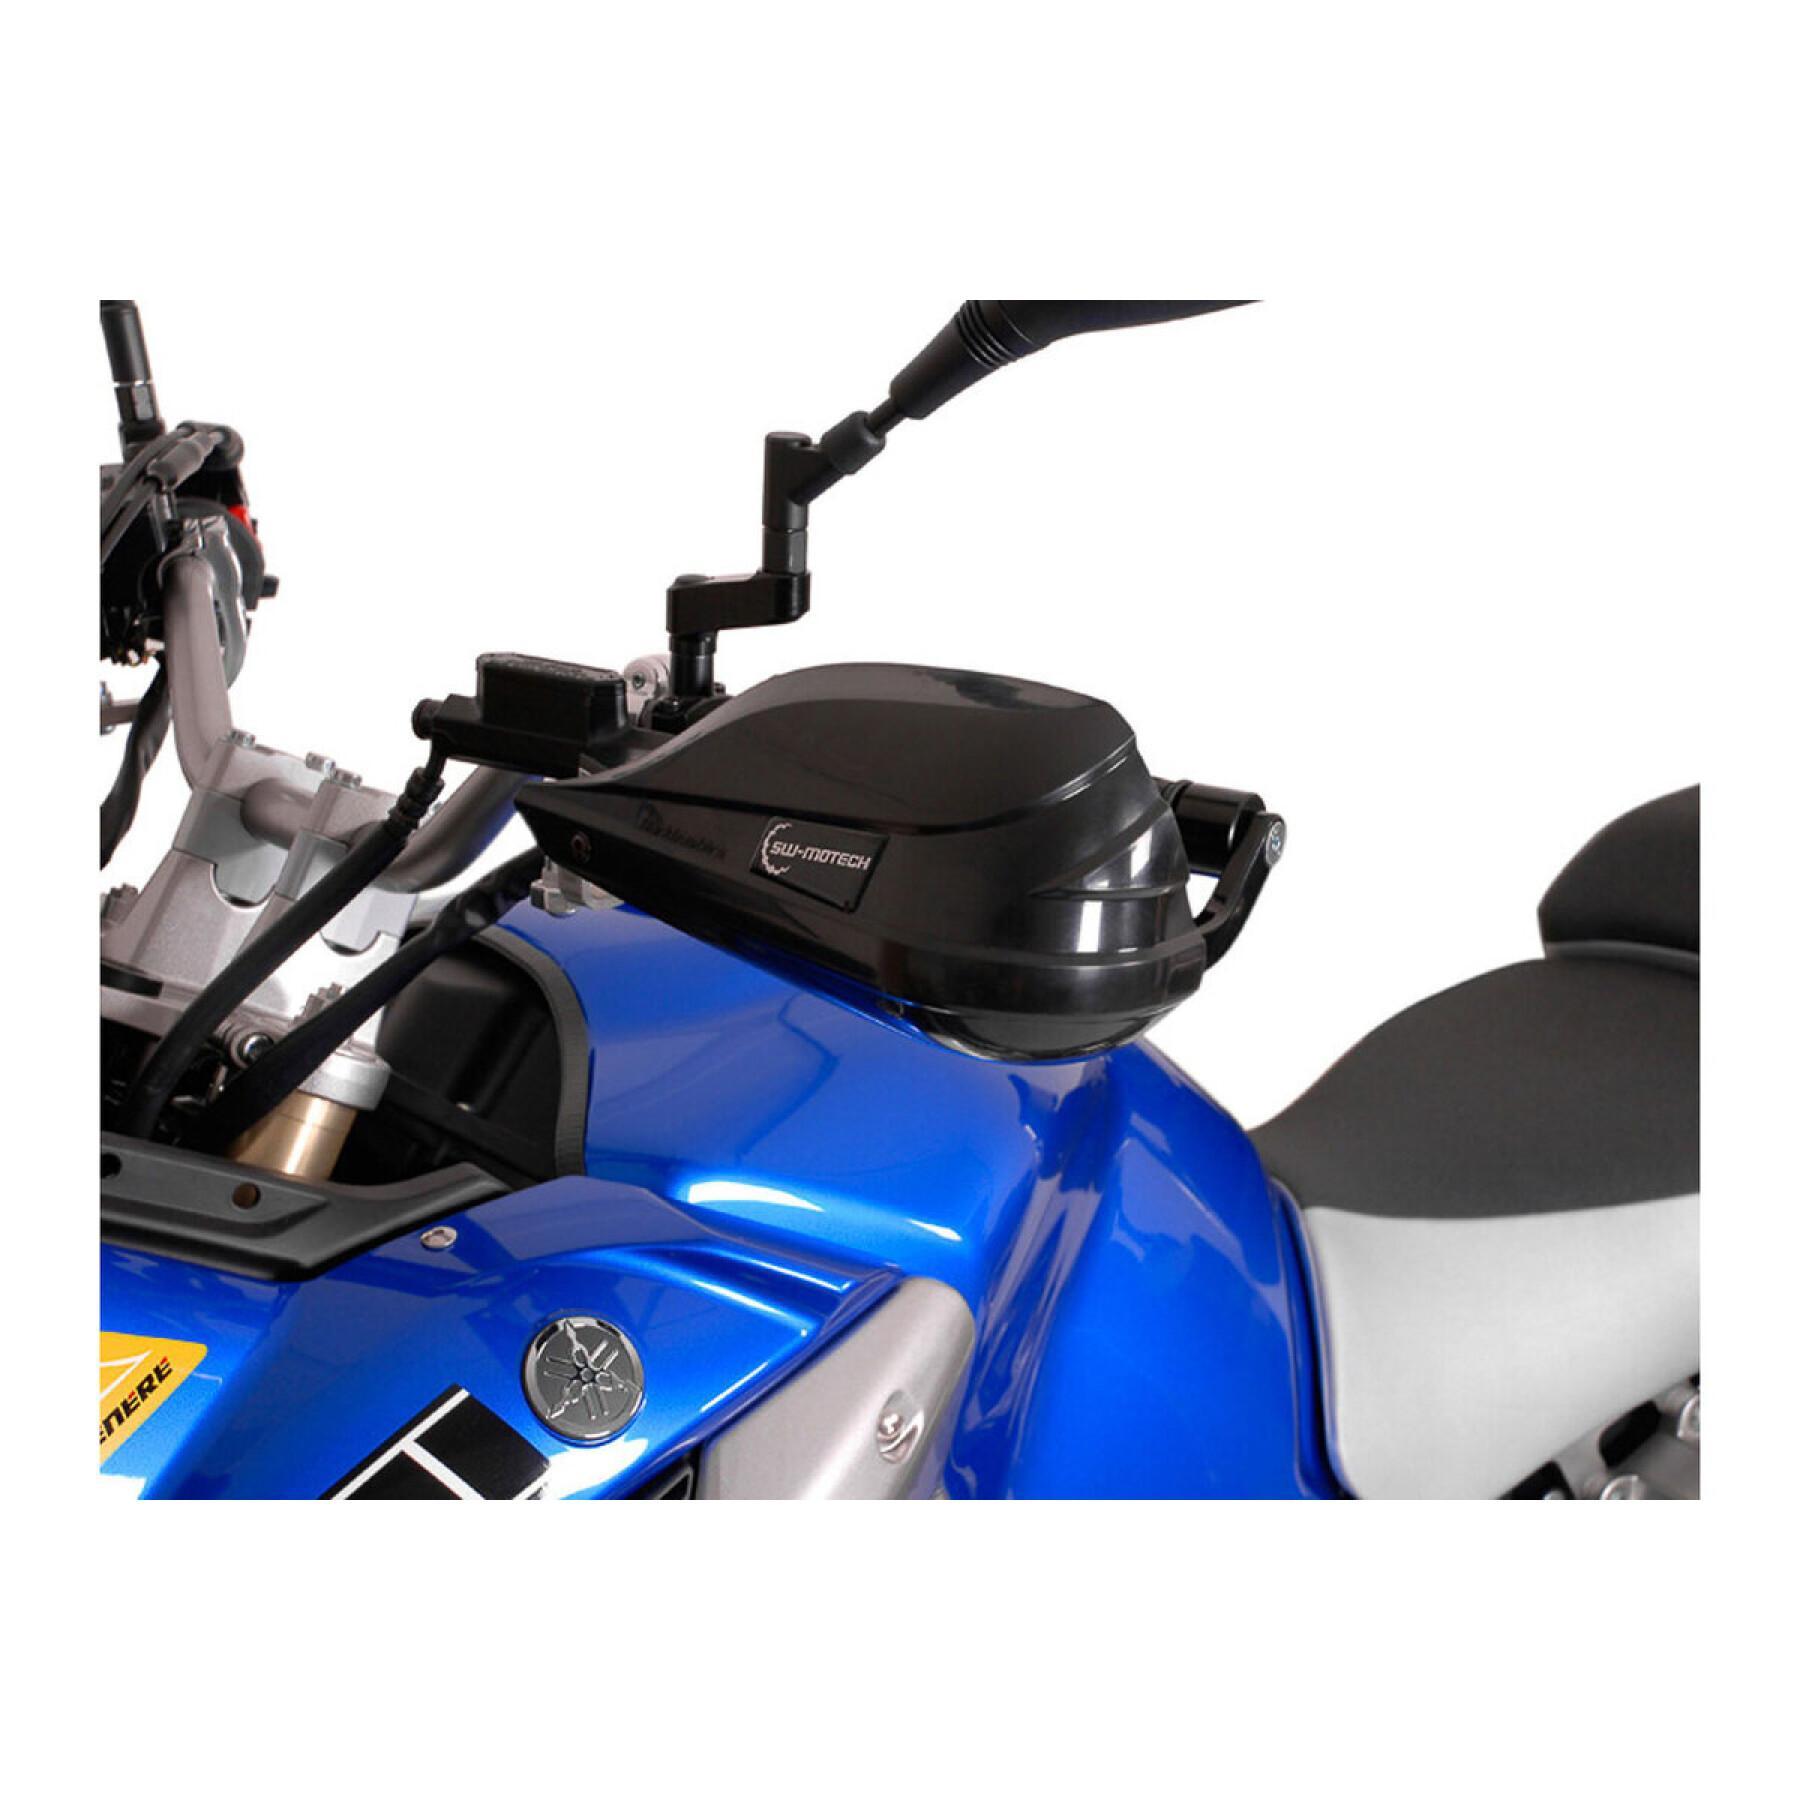 Handskyddssats som är specifik för alla motorcyklar SW-Motech Bbstorm